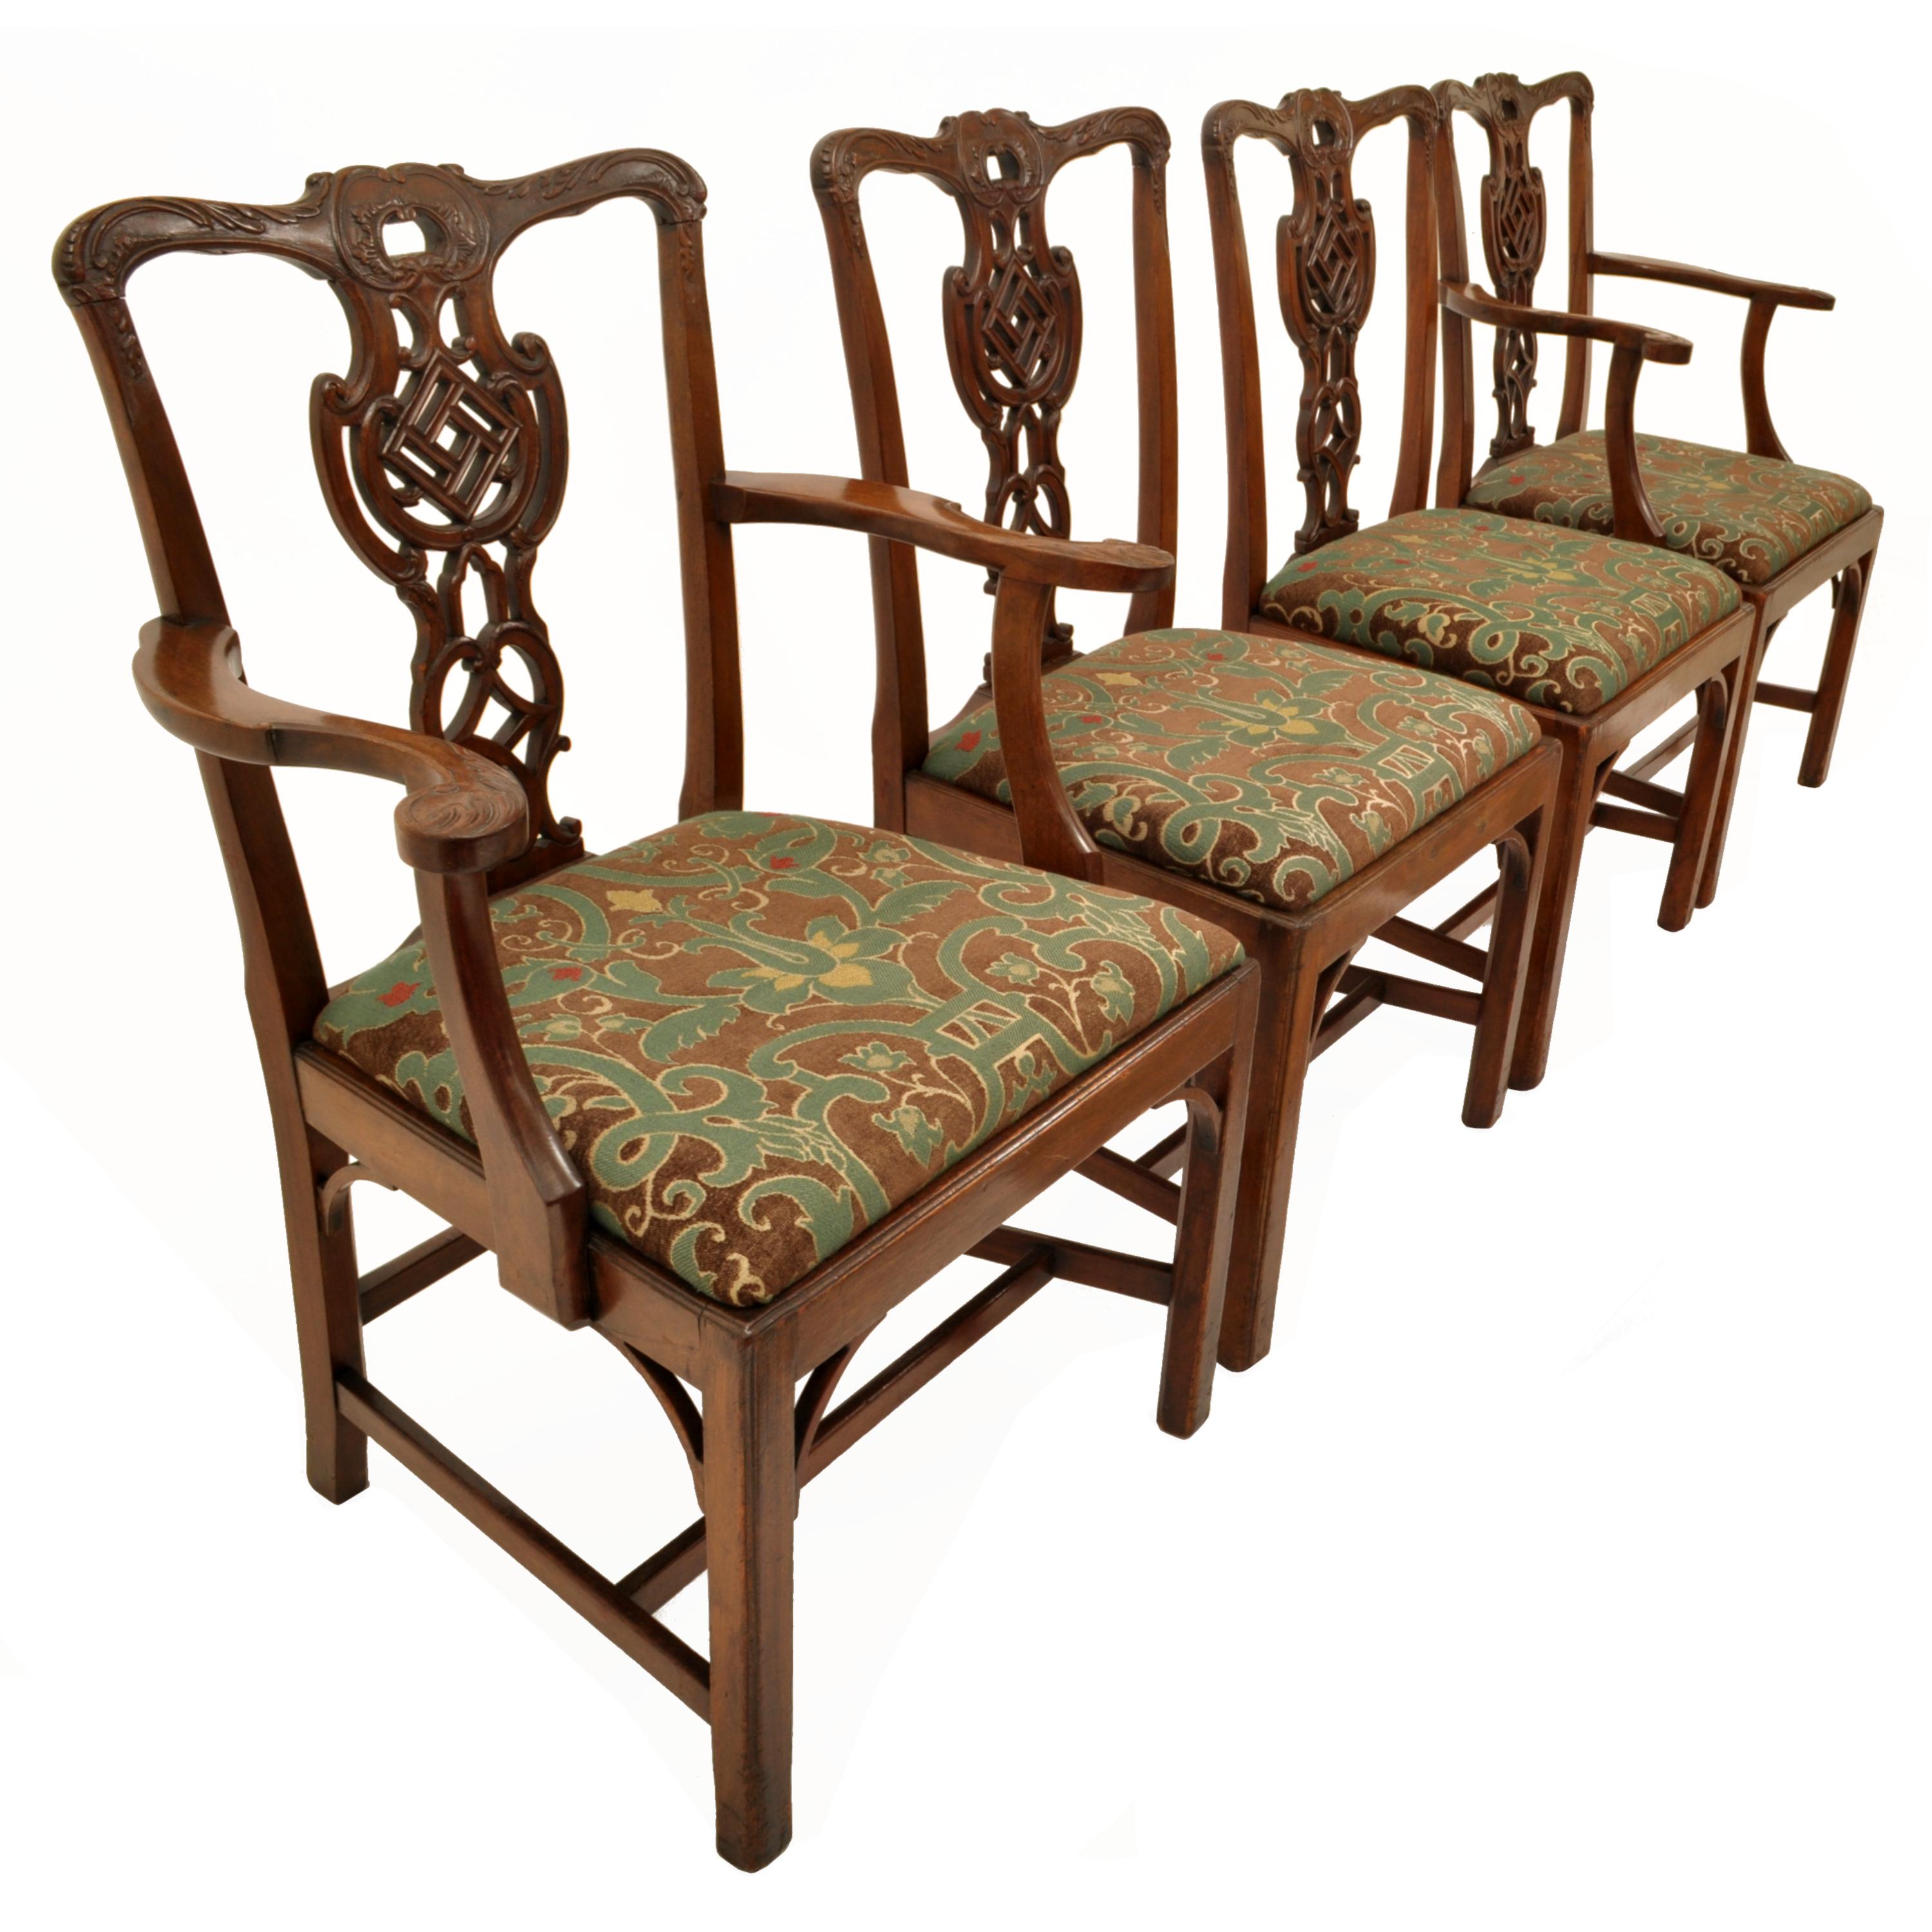 Ein guter Satz von vier antiken Chippendale Revival geschnitzt Mahagoni Stühle, um 1890.
Die Stühle sind fein aus hochwertigem massivem Mahagoni geschnitzt, jeder Stuhl hat Rückenschienen und Arme mit Akanthusblättern geschnitzt, die vasenförmigen